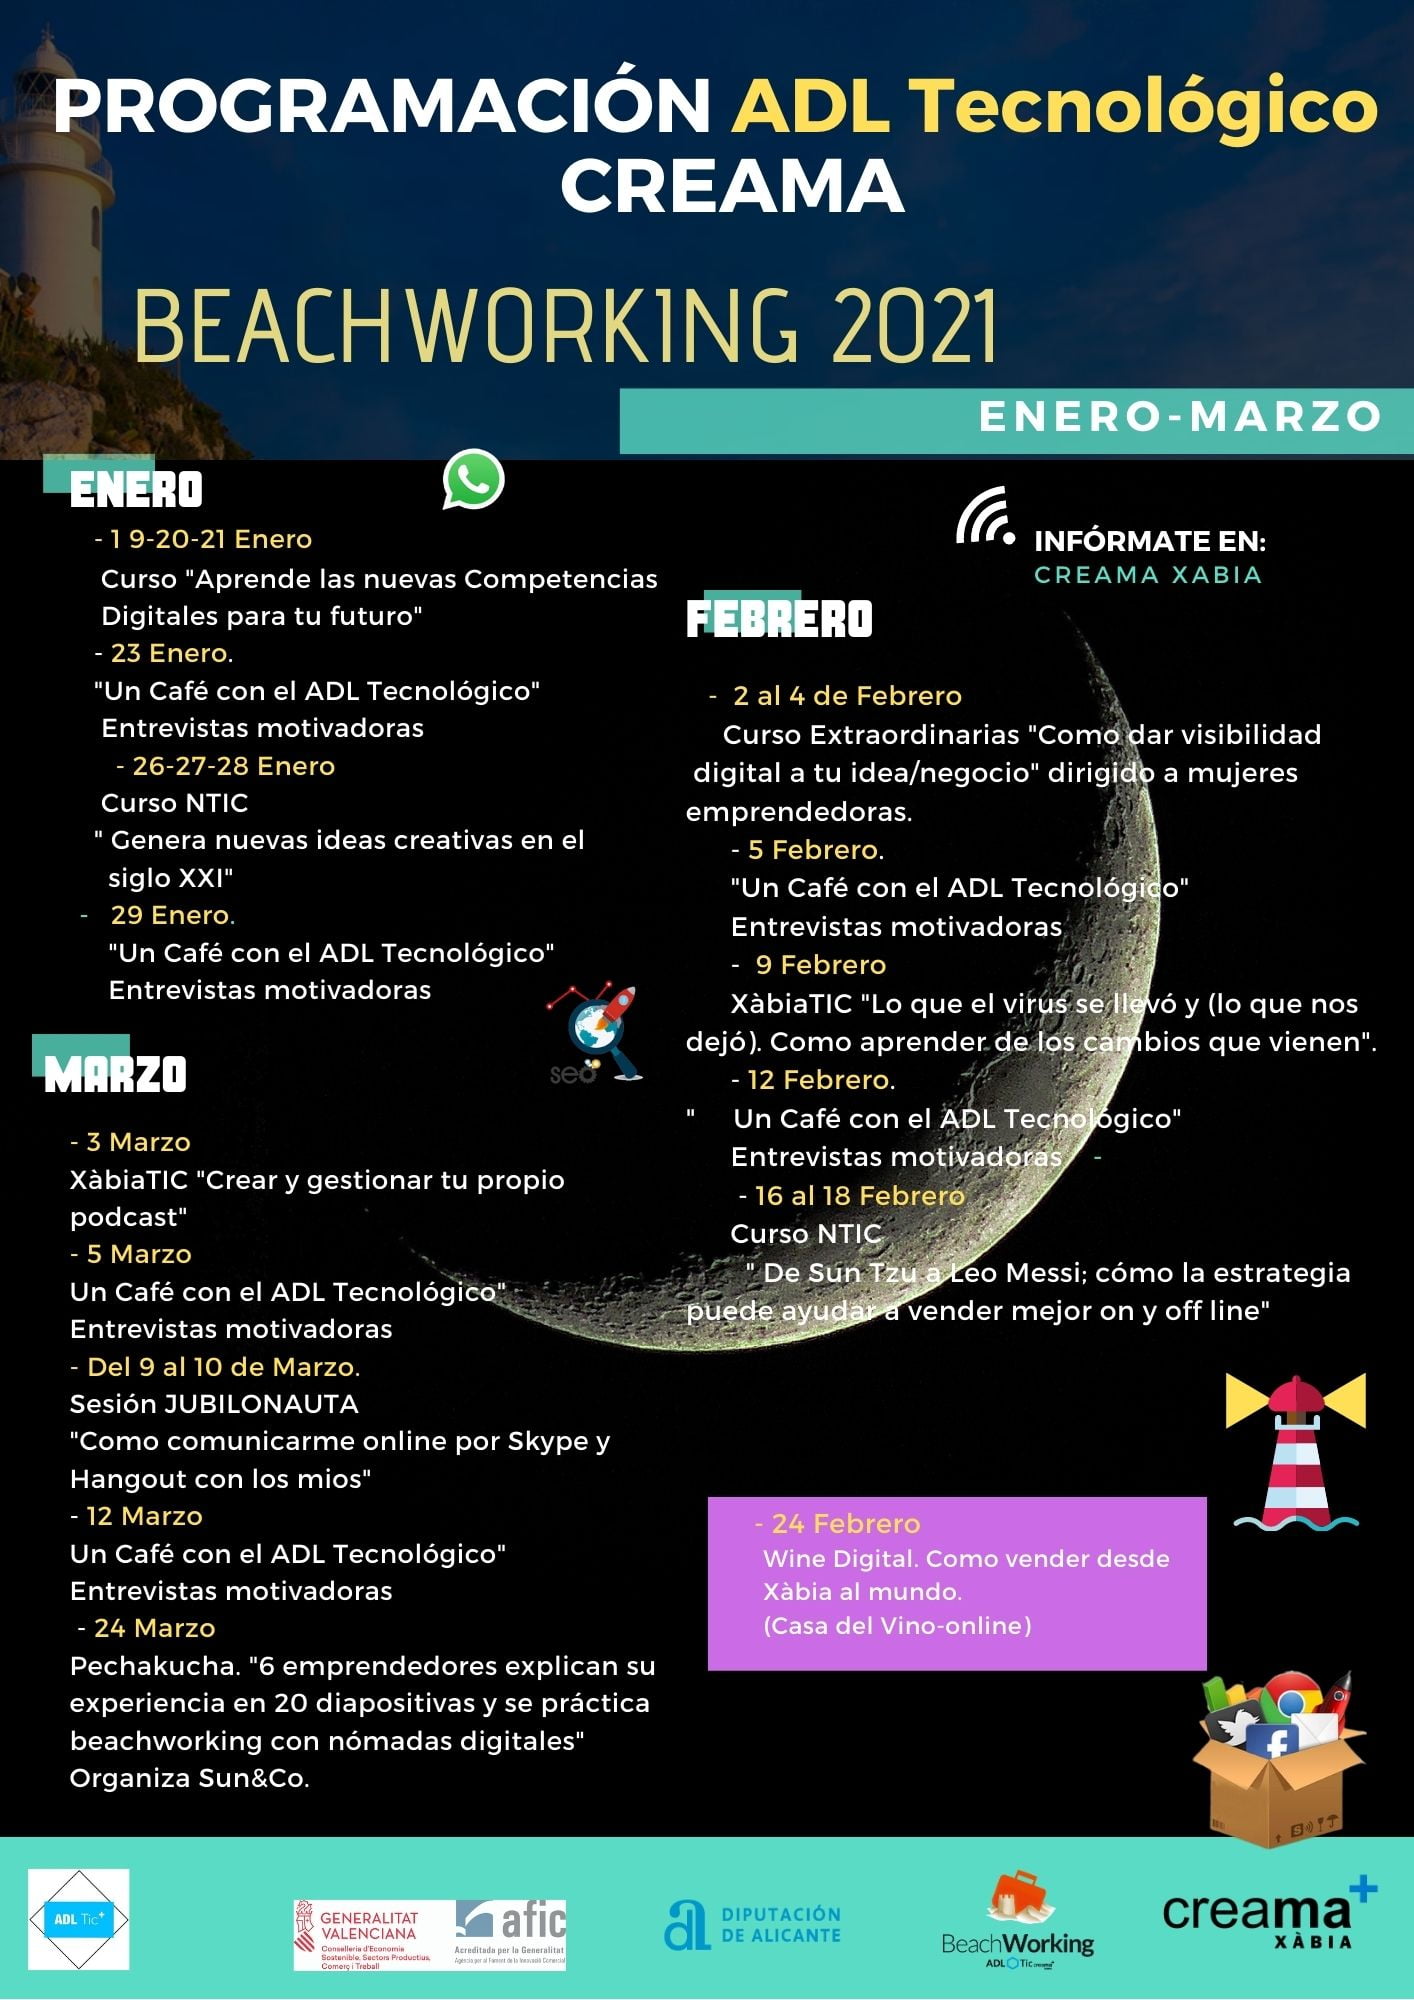 Programación completa del Beachworking 2021